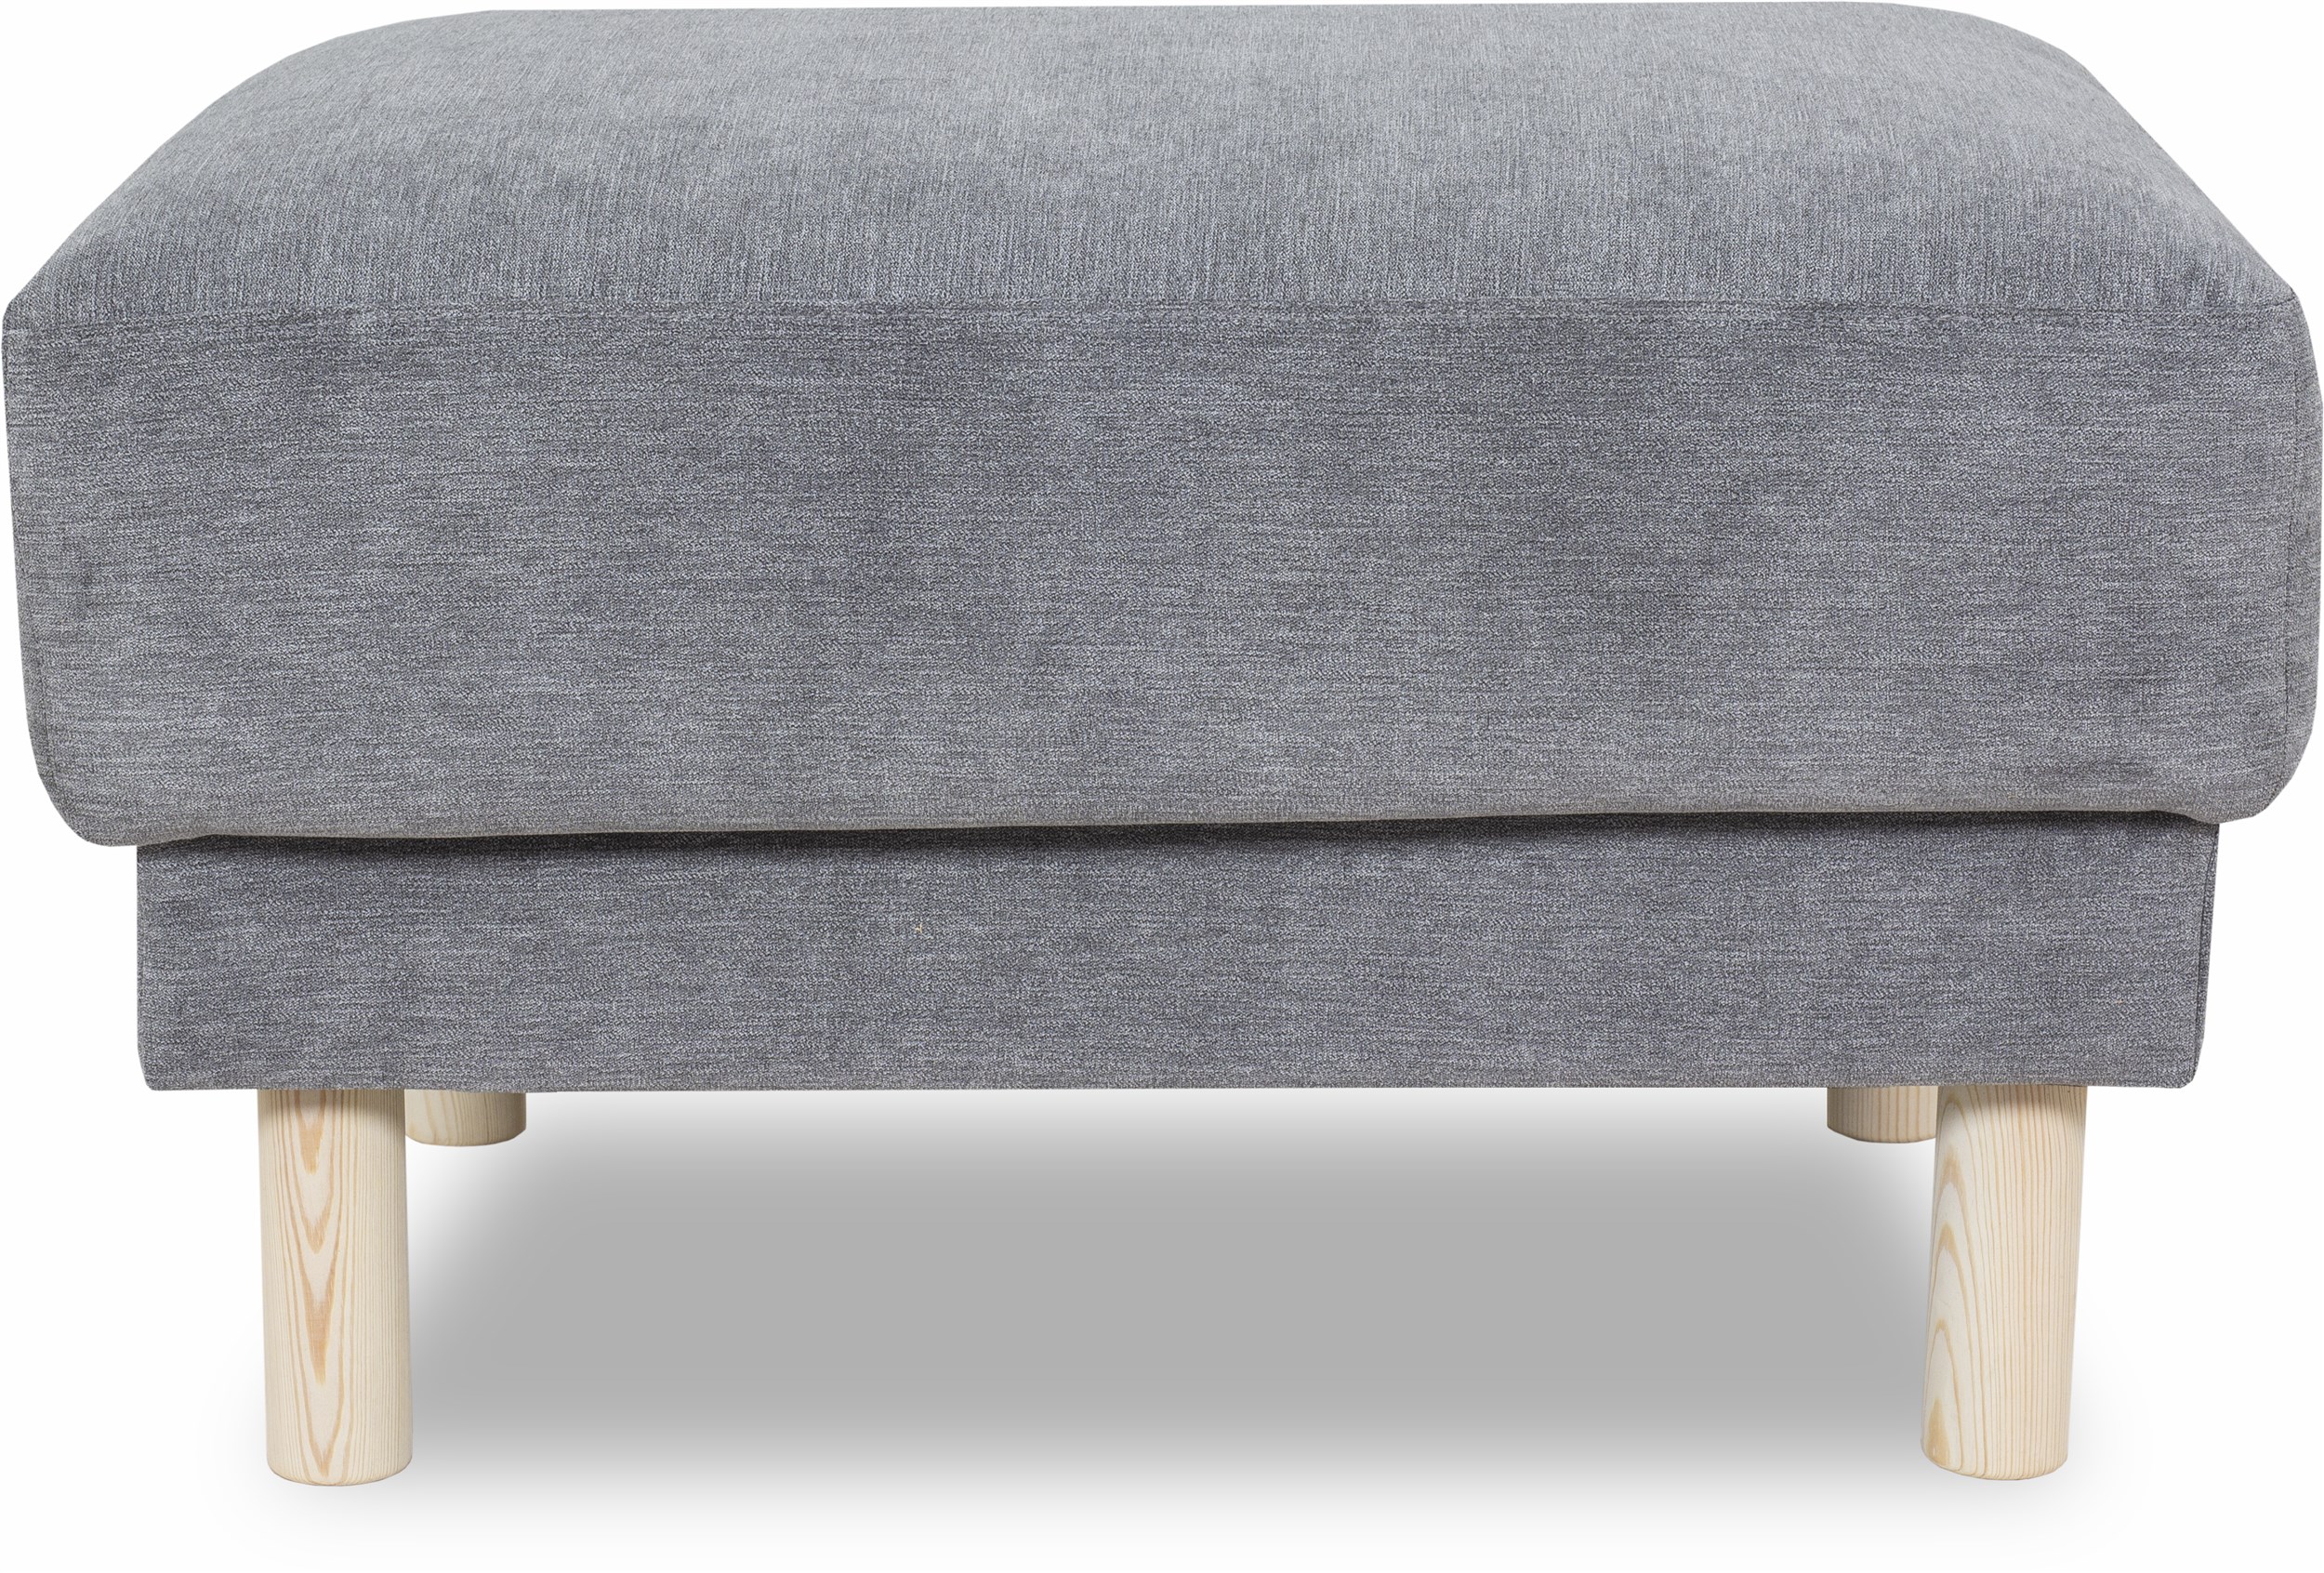 Cleveland Sofa puf - Soft 450 Grey stof, Ben i hvidolieret fyrretræ og sæde i polyetherskum